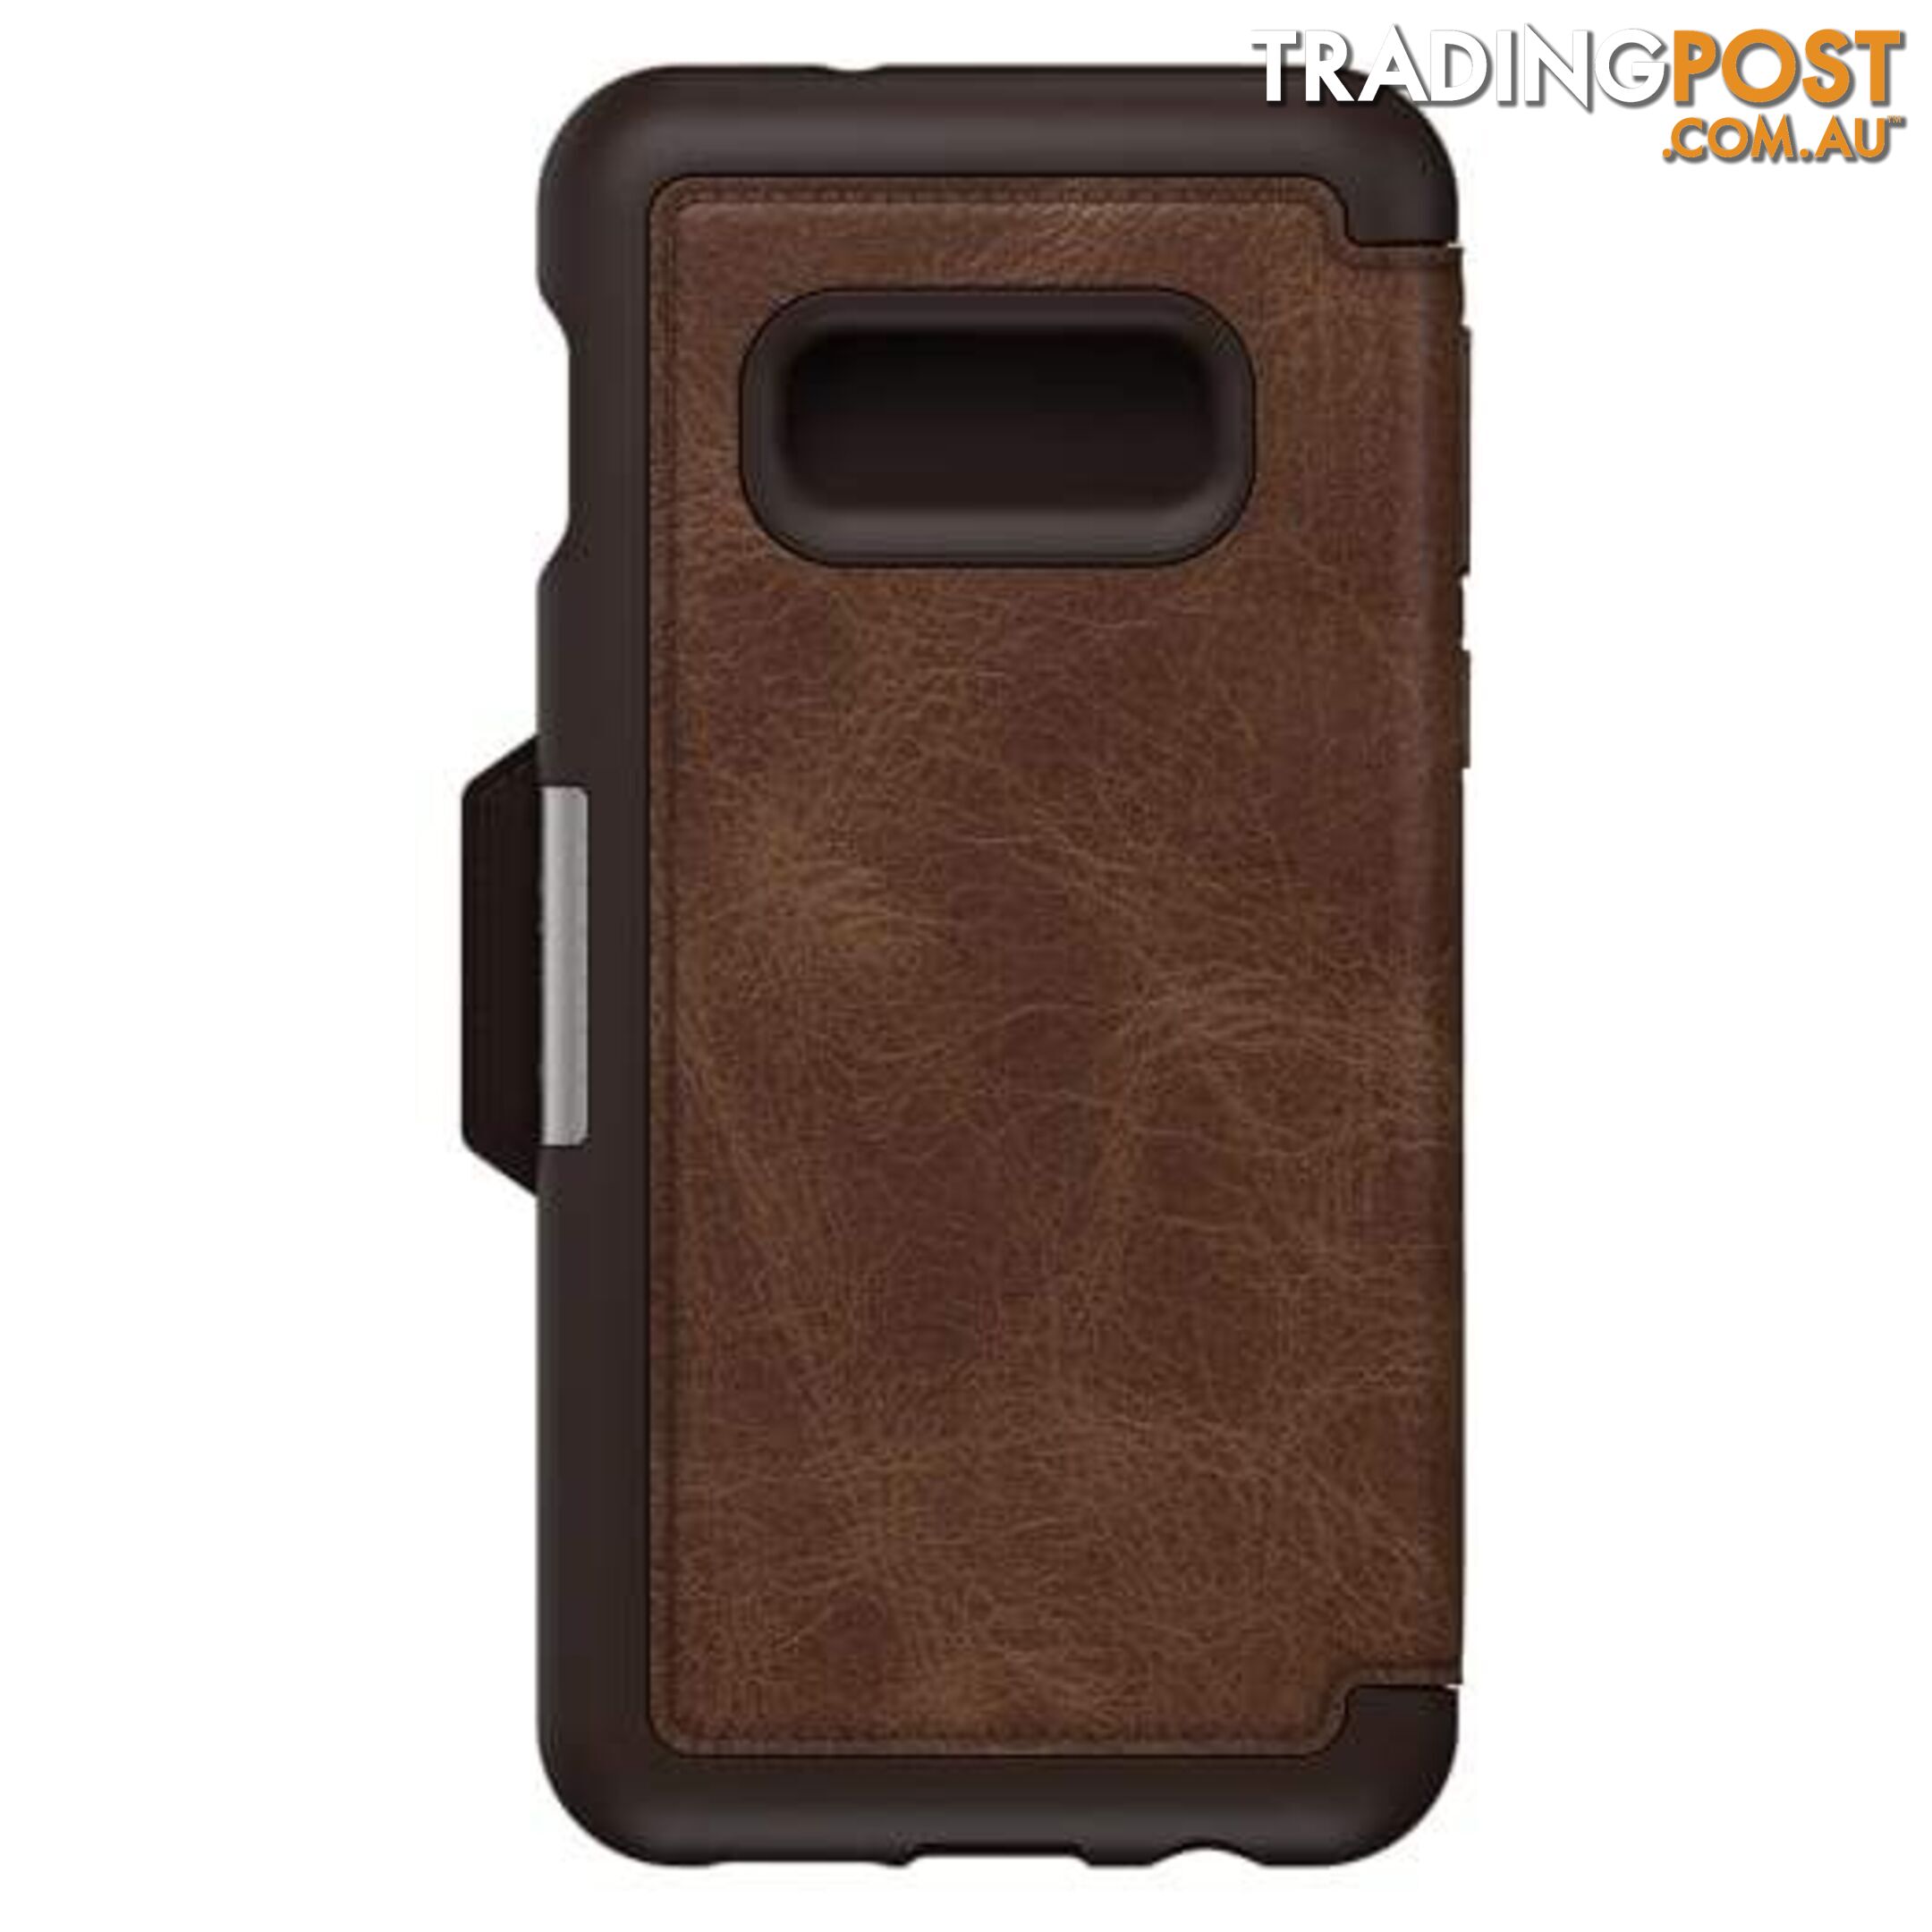 OtterBox Strada Folio Case For Samsung Galaxy S10e - OtterBox - Espresso - 660543494980